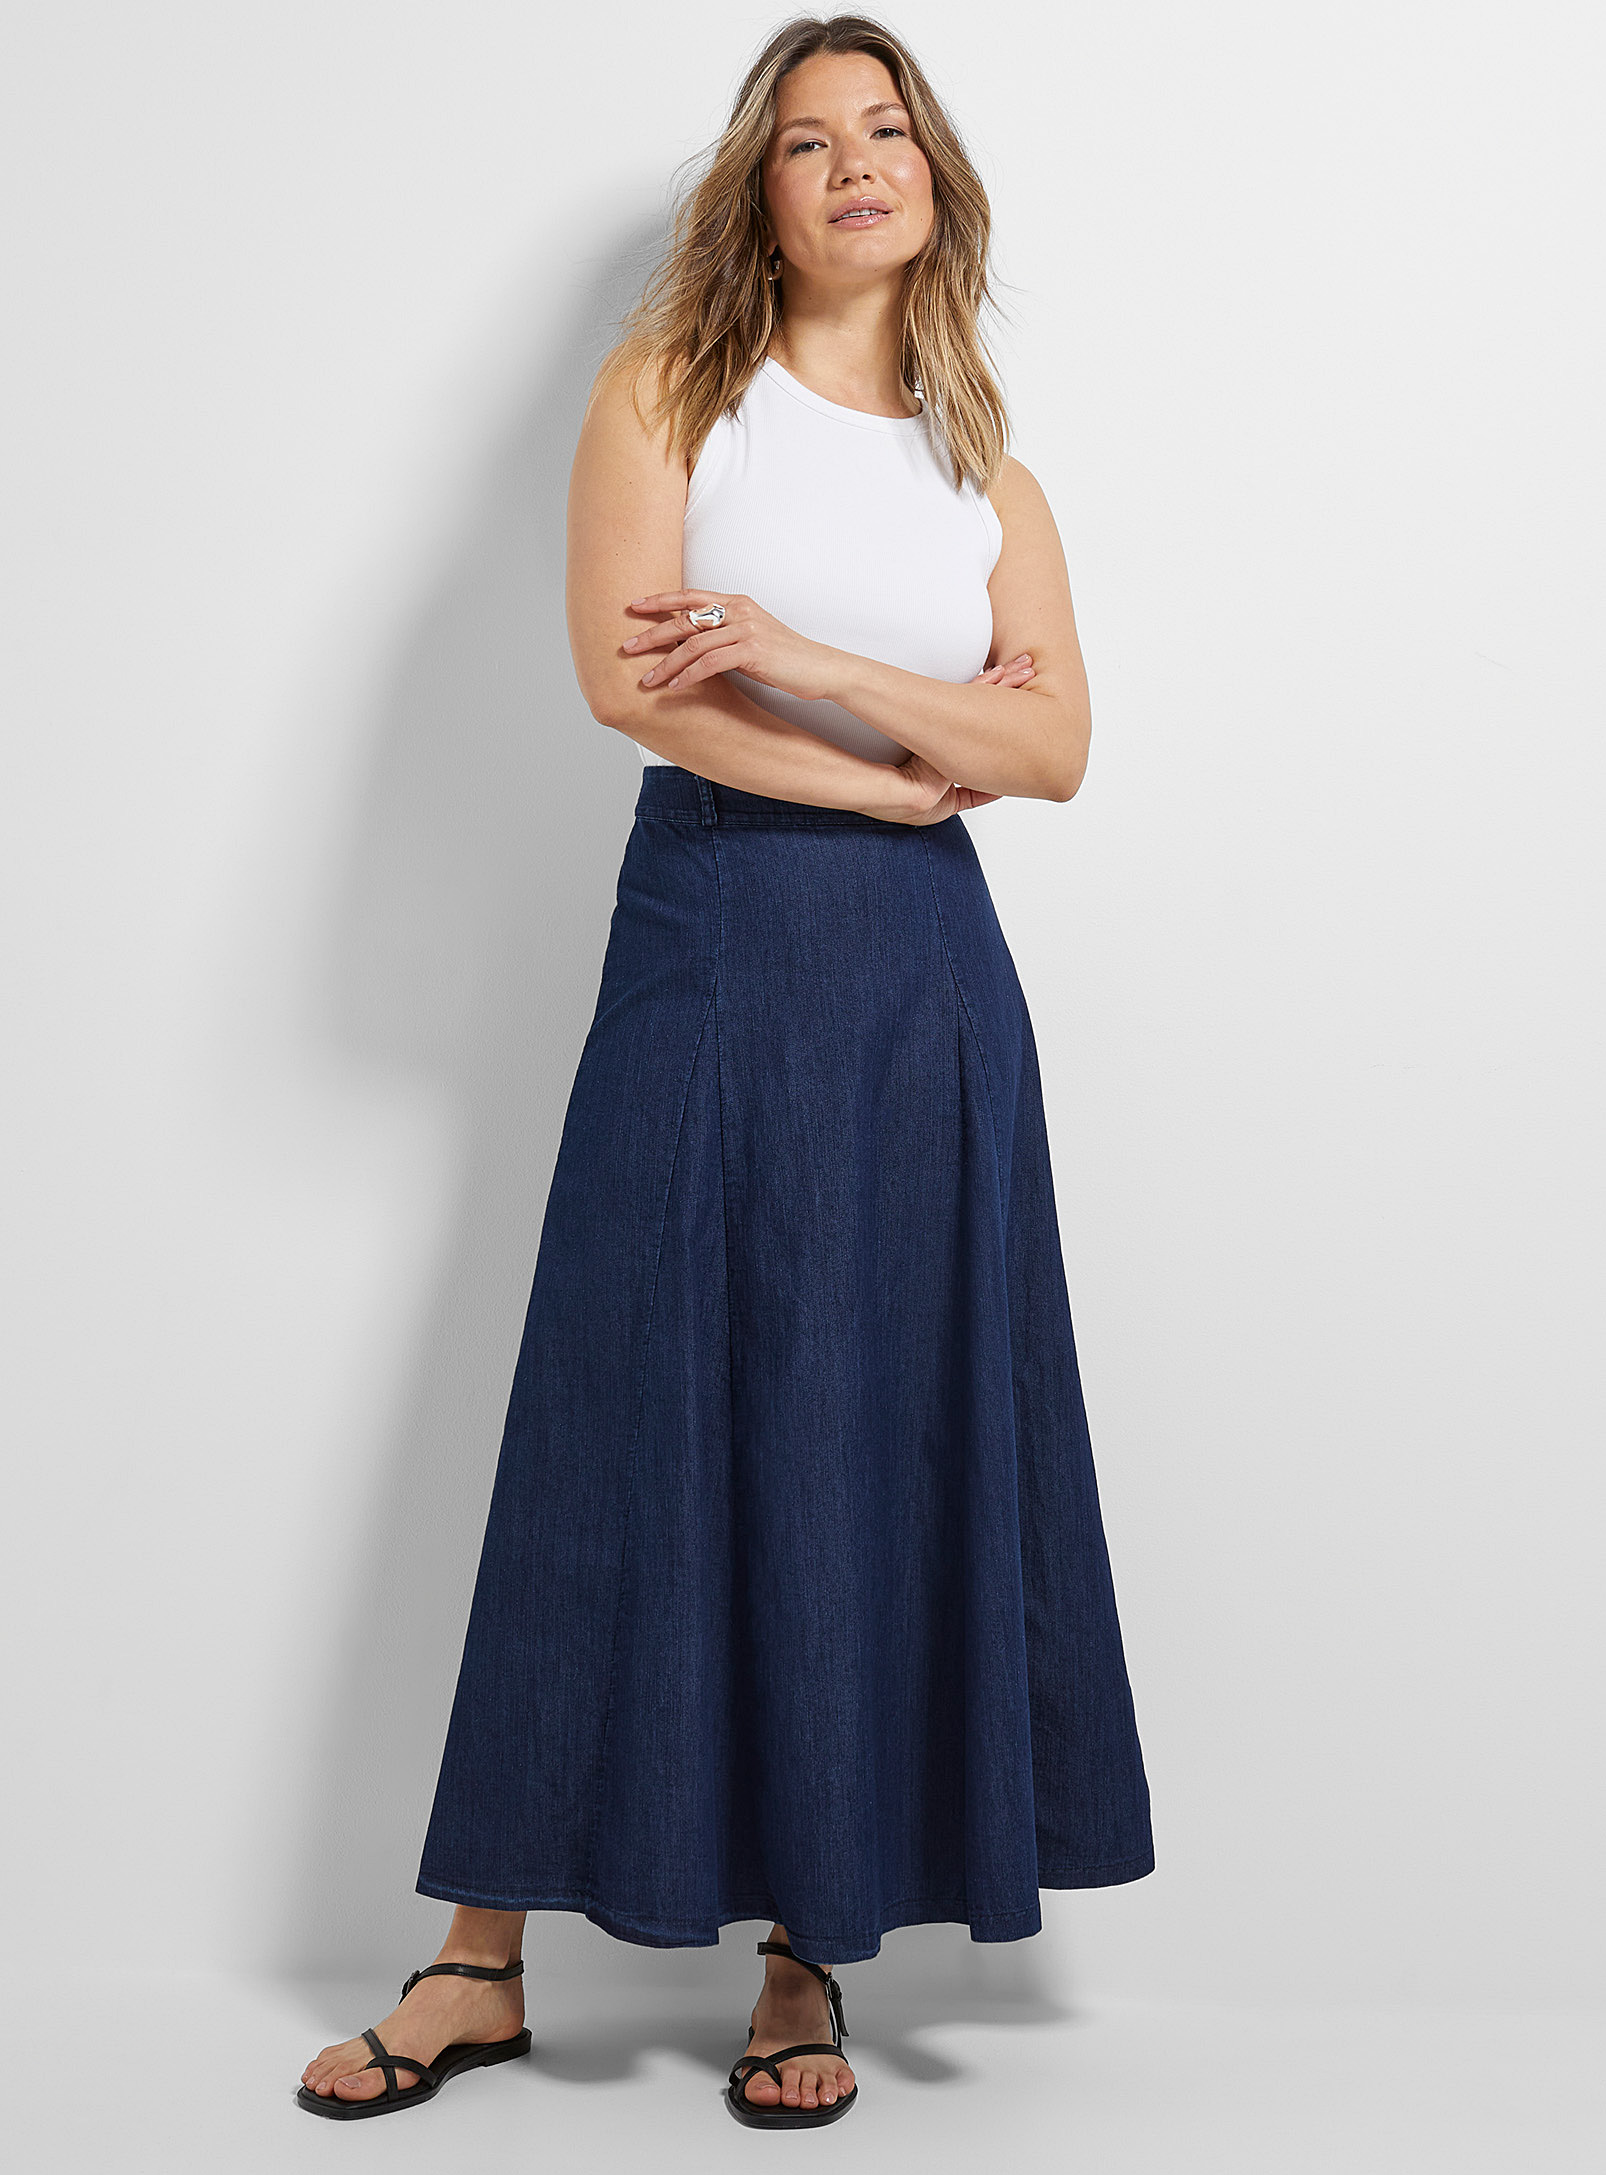 Contemporaine Sleek Denim Maxi Skirt In Navy/midnight Blue